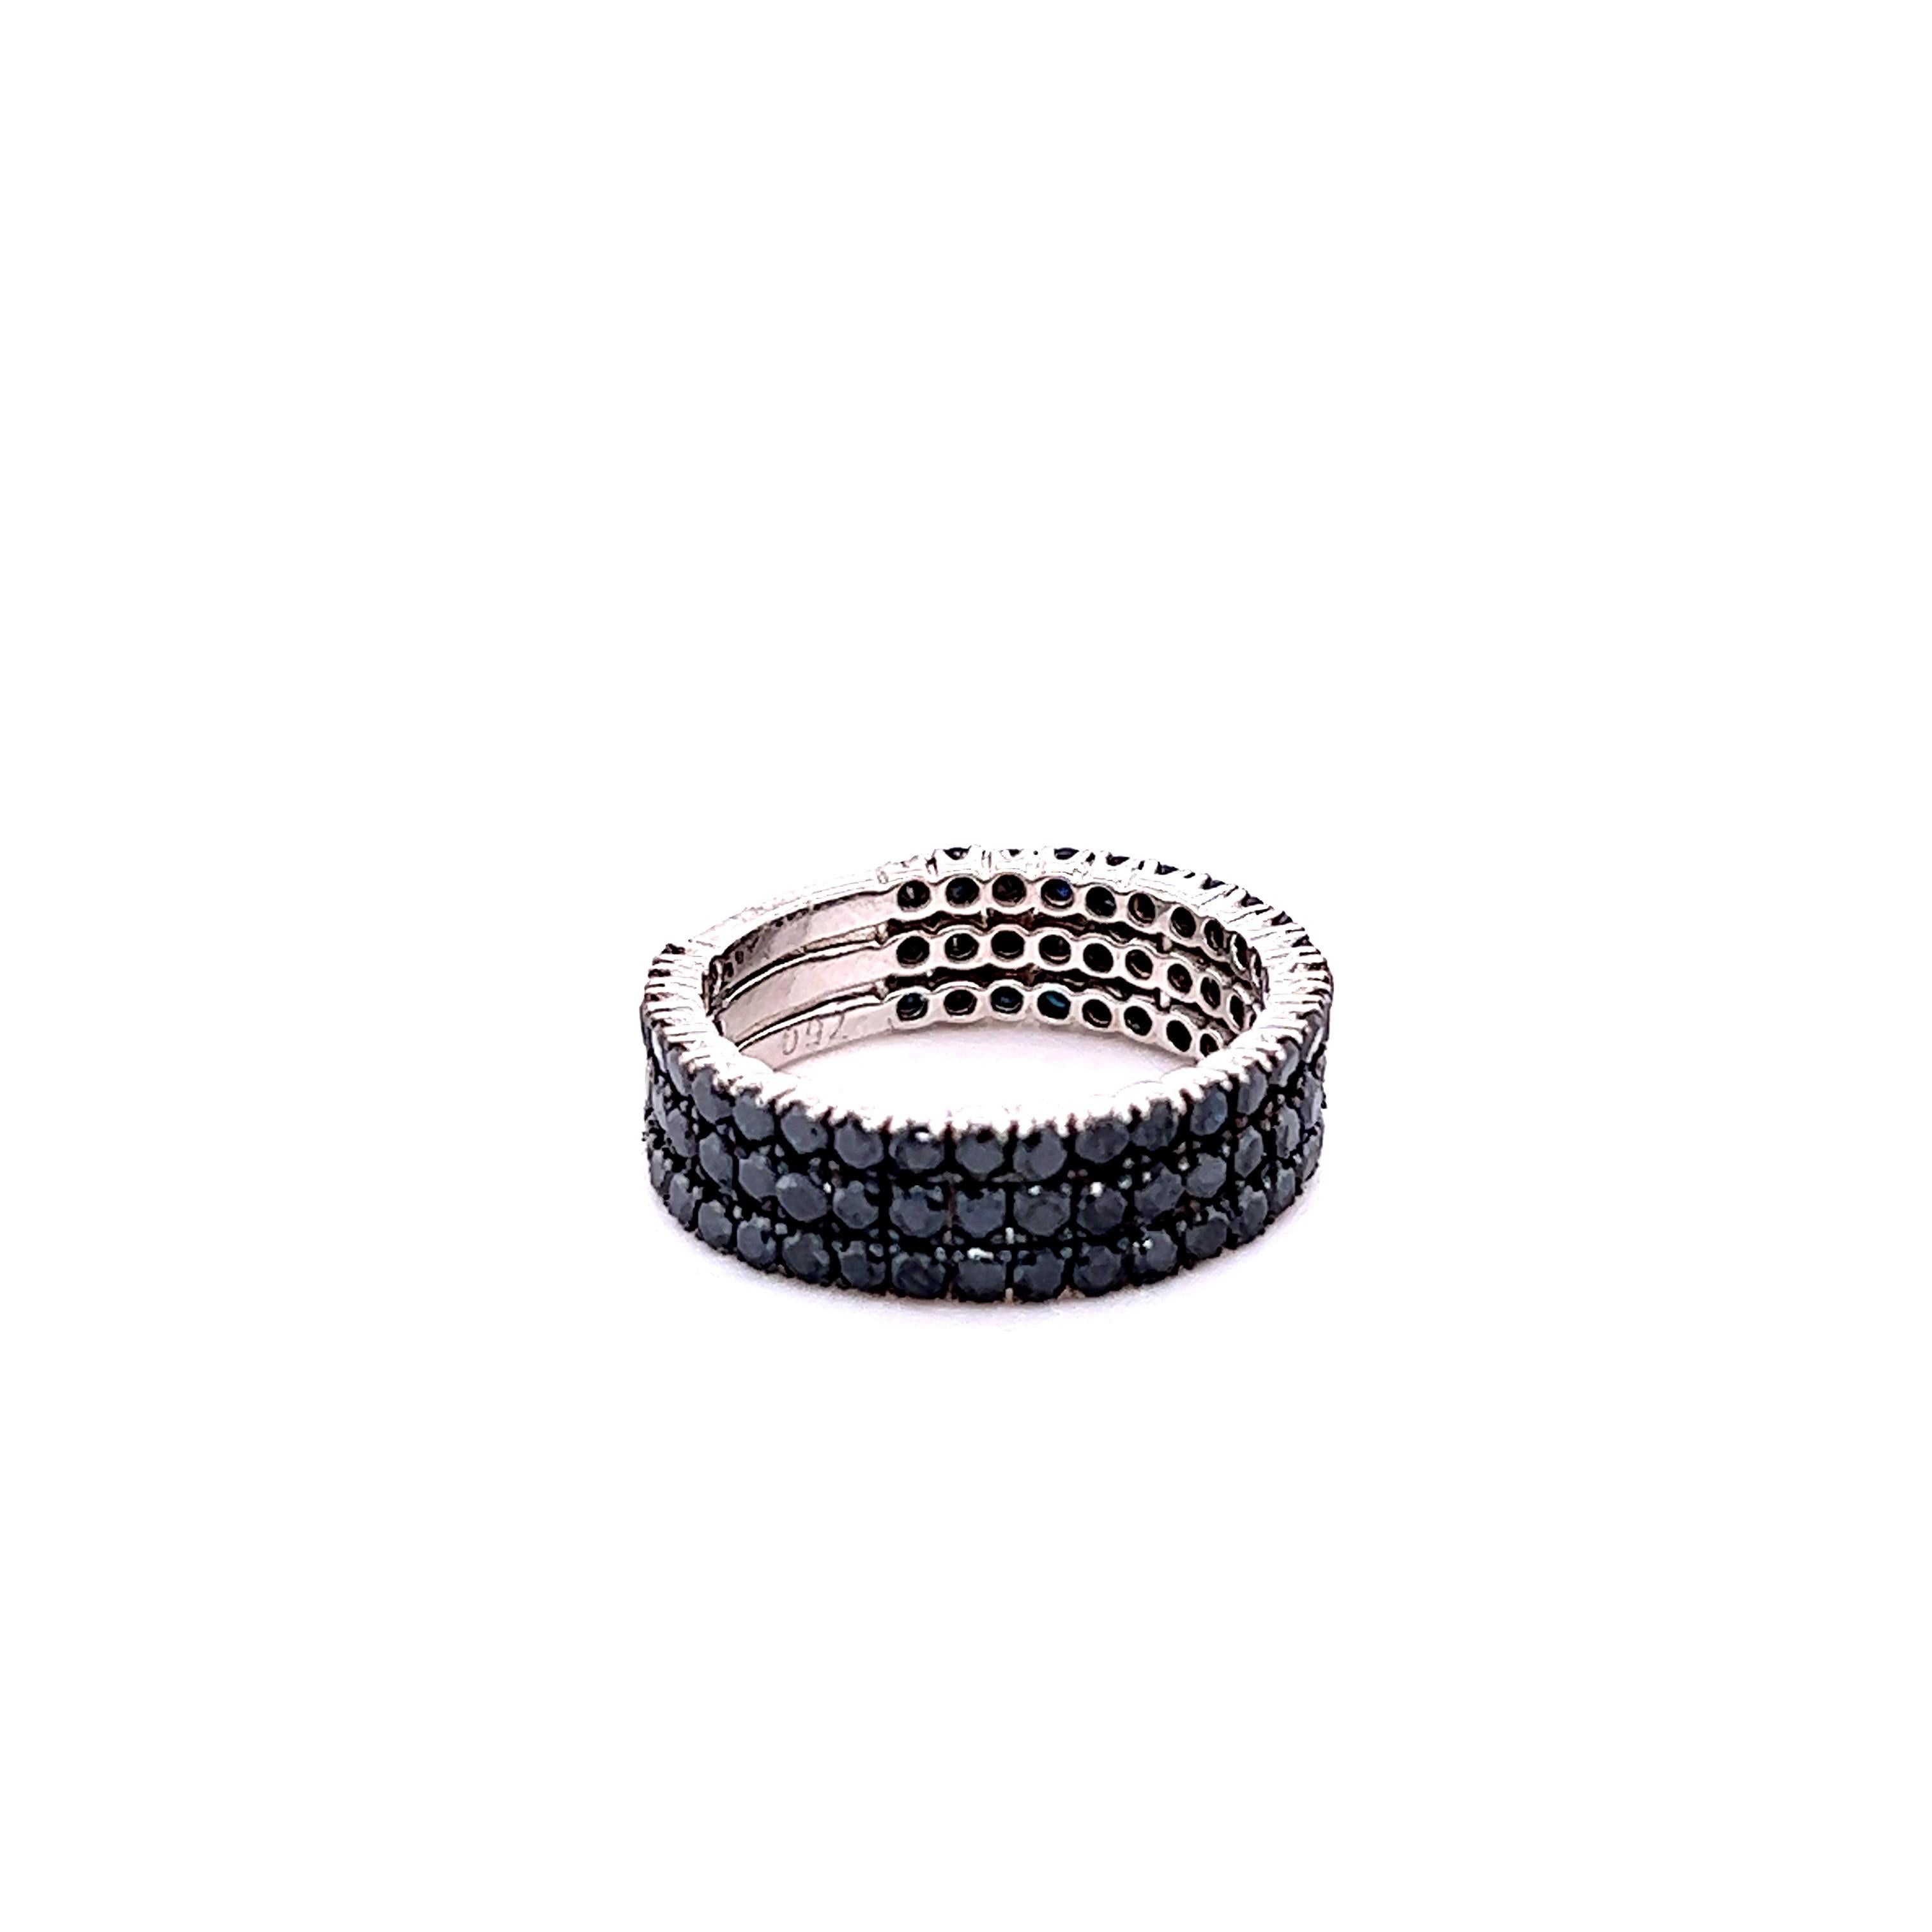 Dieser Ring enthält 90 schwarze Diamanten im Rundschliff mit einem Gewicht von 2,17 Karat. 
Die schwarzen Diamanten sind natürlich und werden farblich behandelt, um ihre schwarze Farbe zu erhalten. 

Er ist in 14 Karat Weißgold gefasst und hat ein